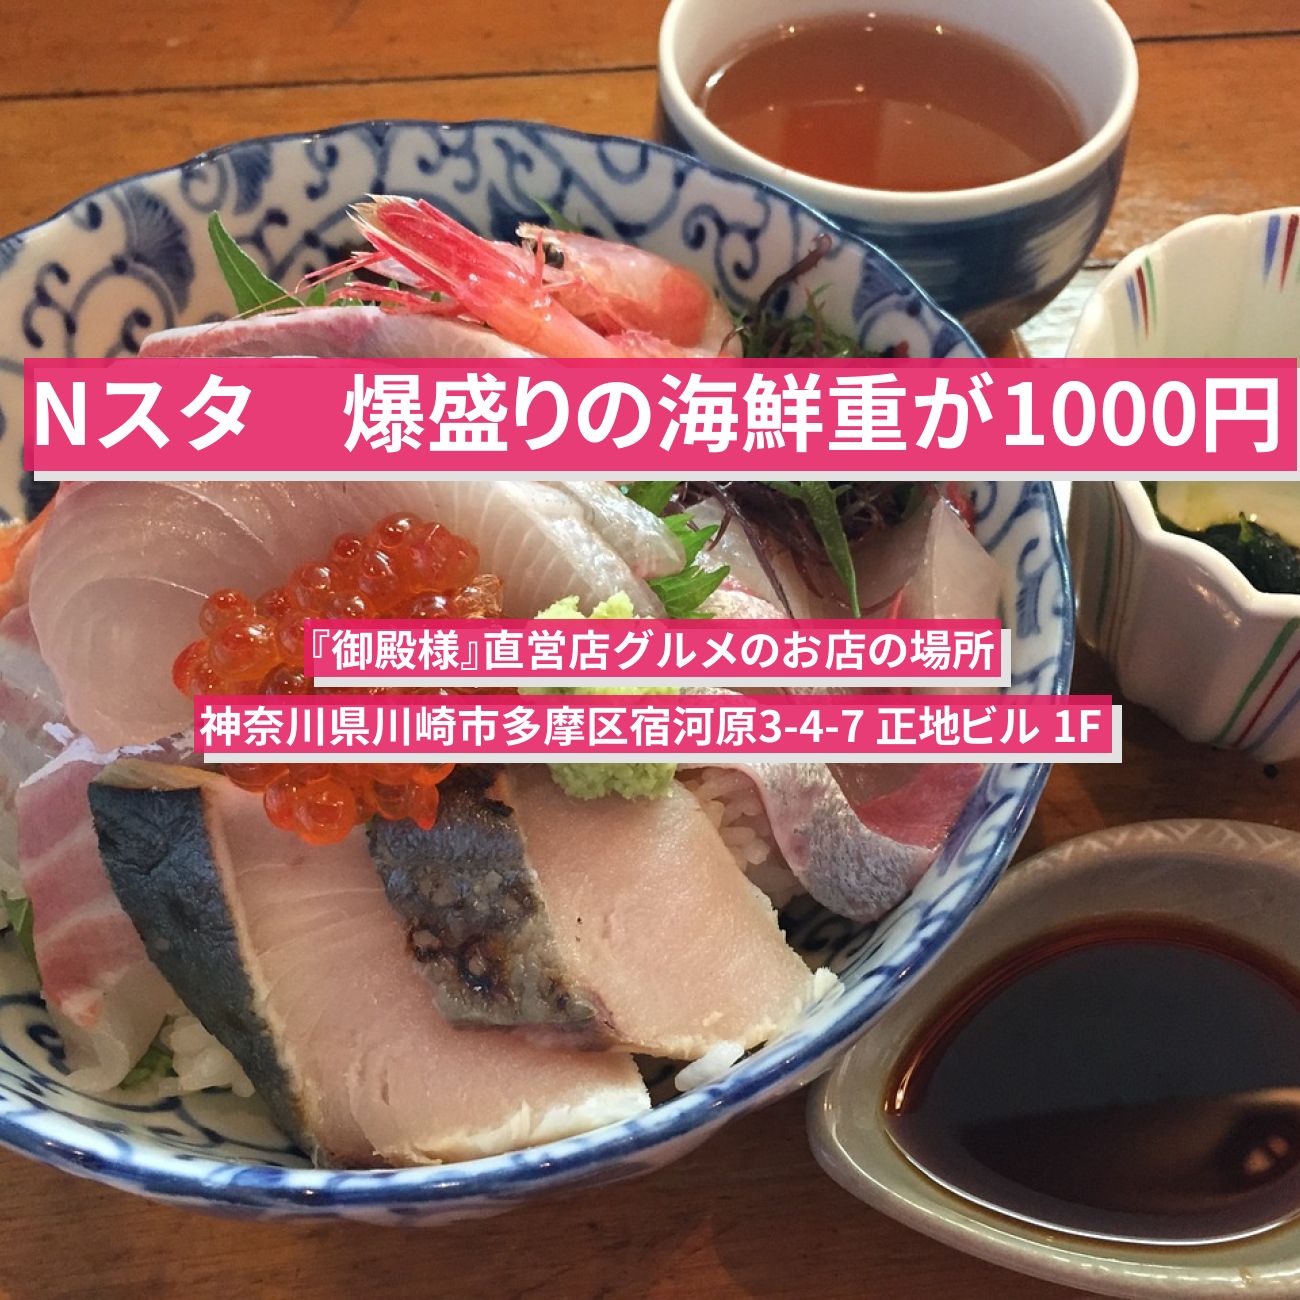 【Nスタ】爆盛りの海鮮重が1000円『御殿様』川崎市の直営店グルメのお店の場所